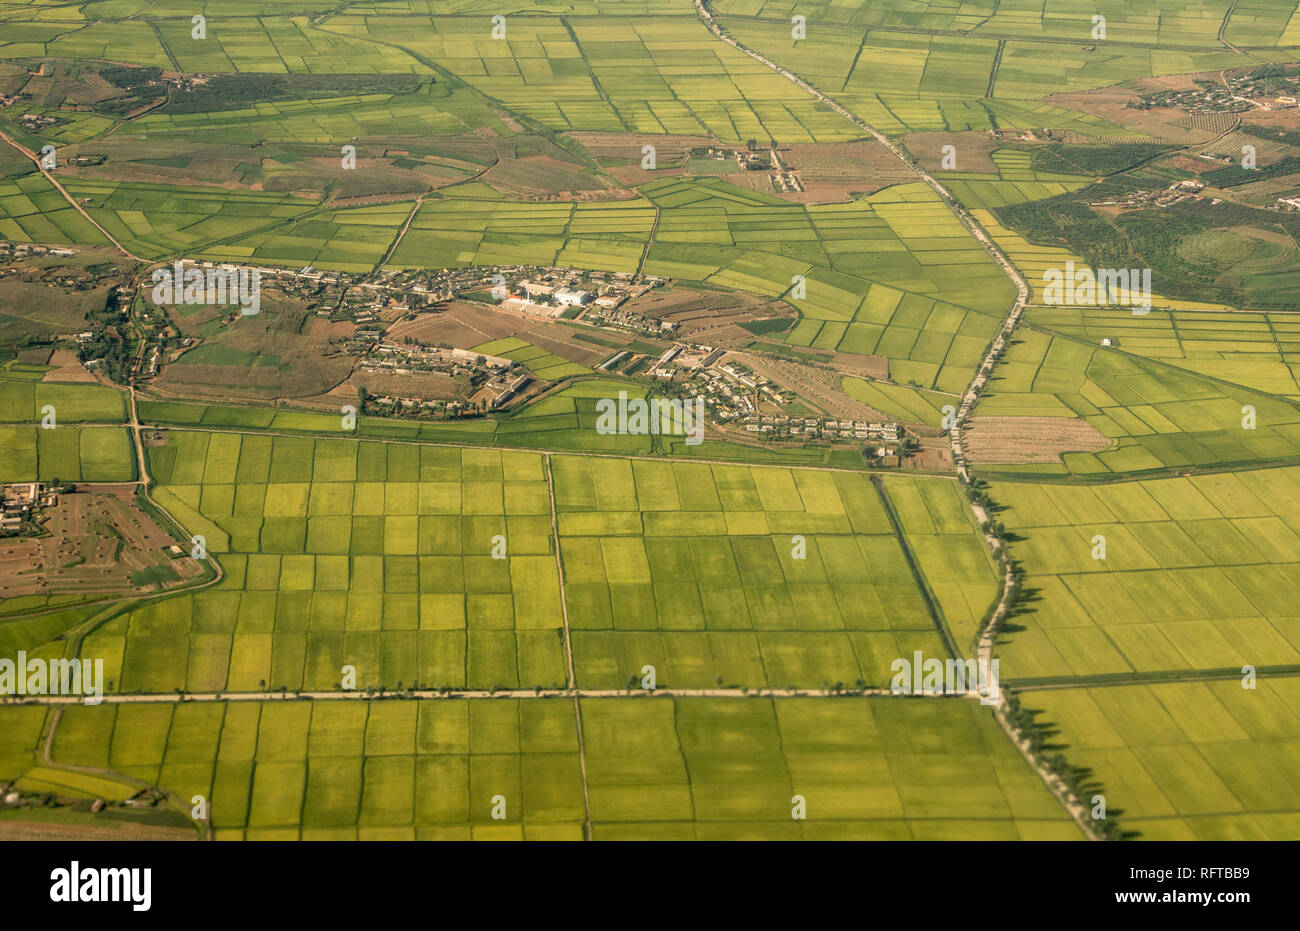 Village, rice paddies and farmland near Hambong, Hamgyong Province, North Korea, Asia Stock Photo